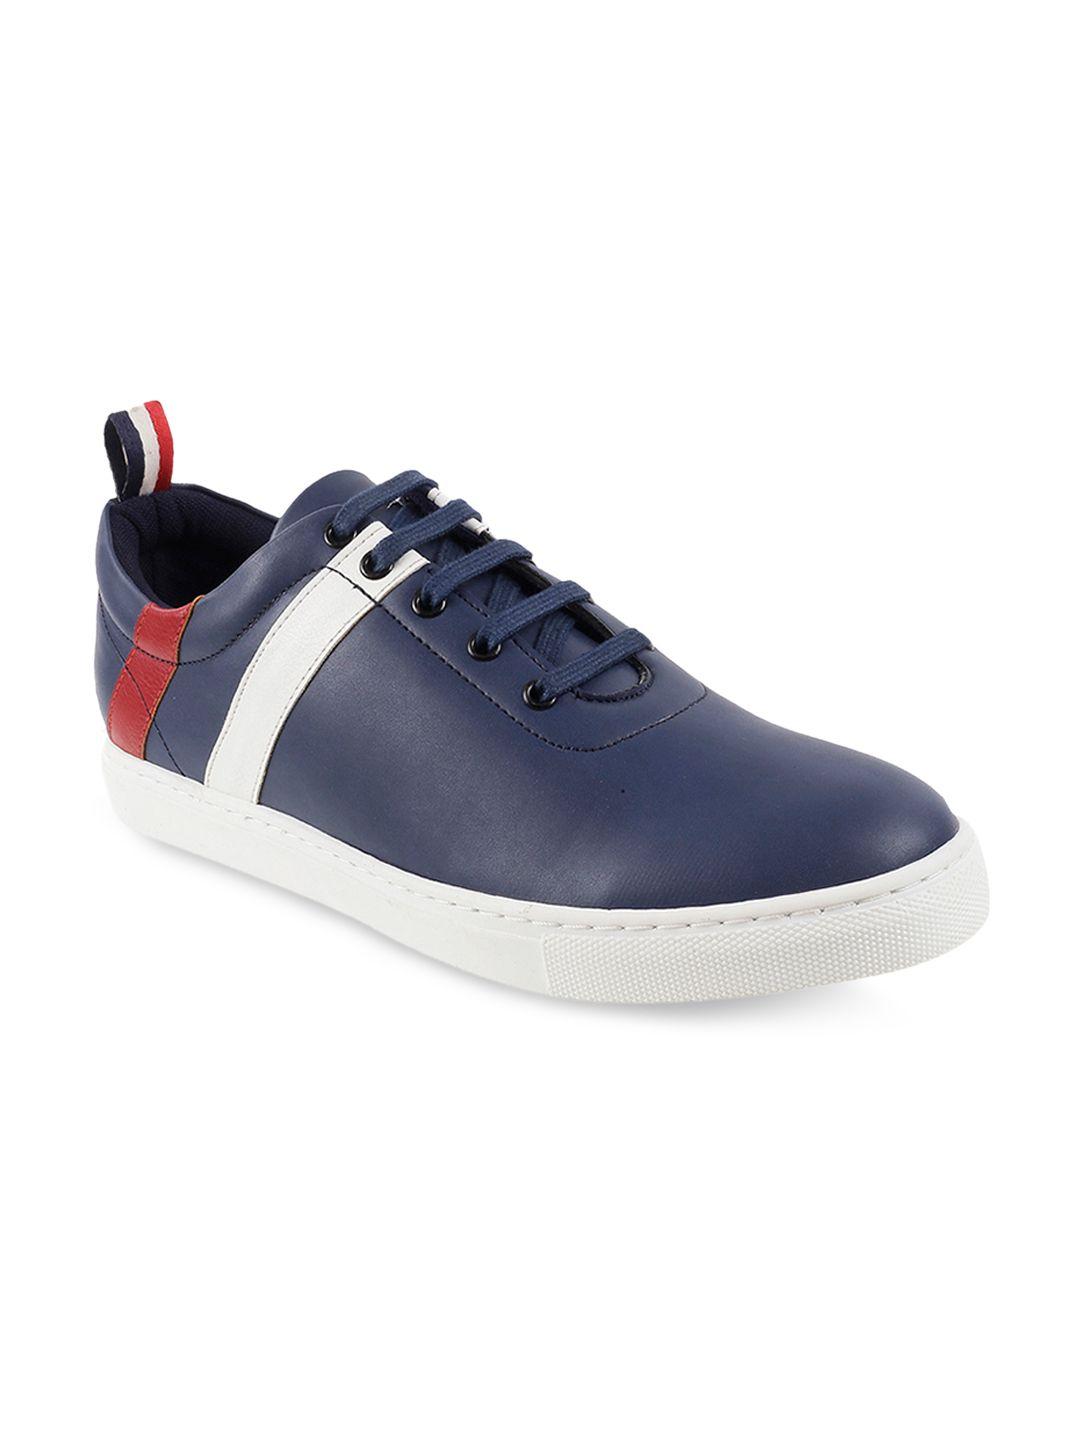 mochi men navy blue & white striped sneakers